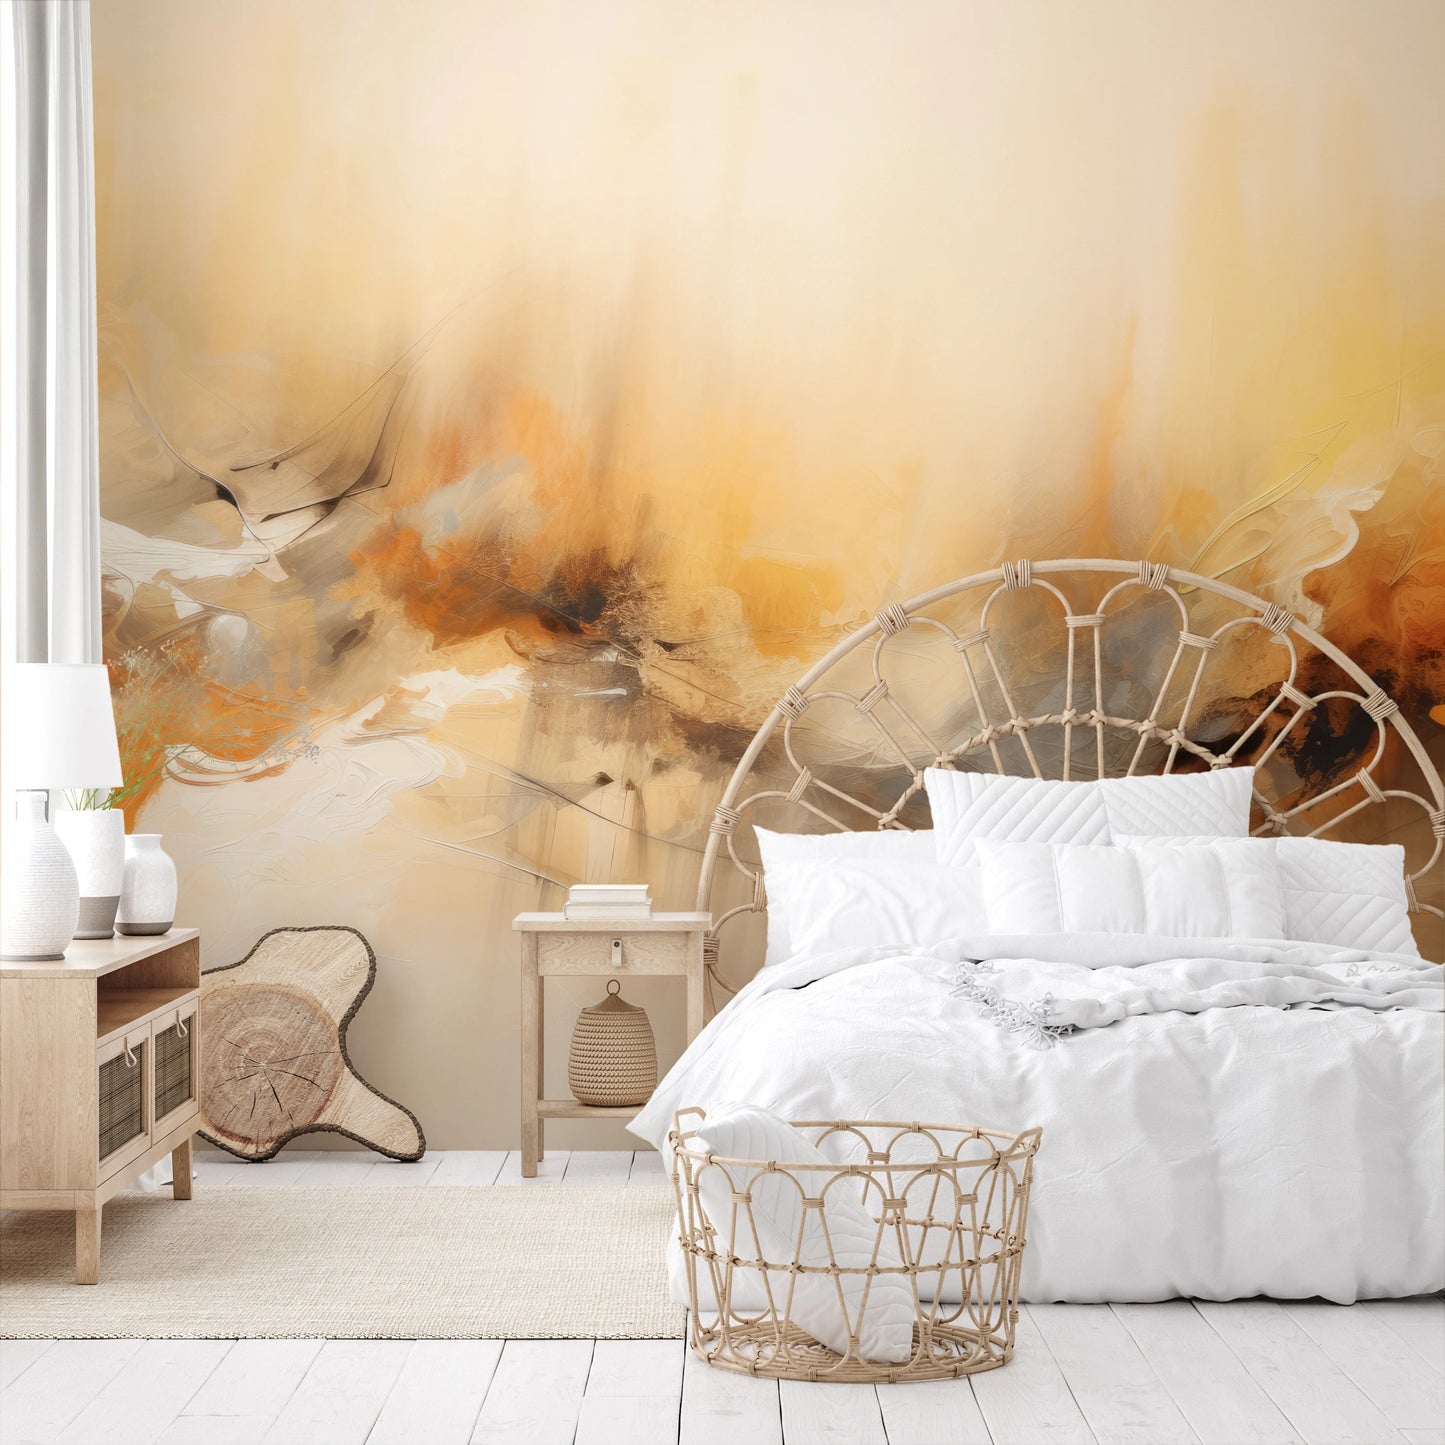 Fototapeta malowana o nazwie Organic Abstraction pokazana w aranżacji wnętrza.